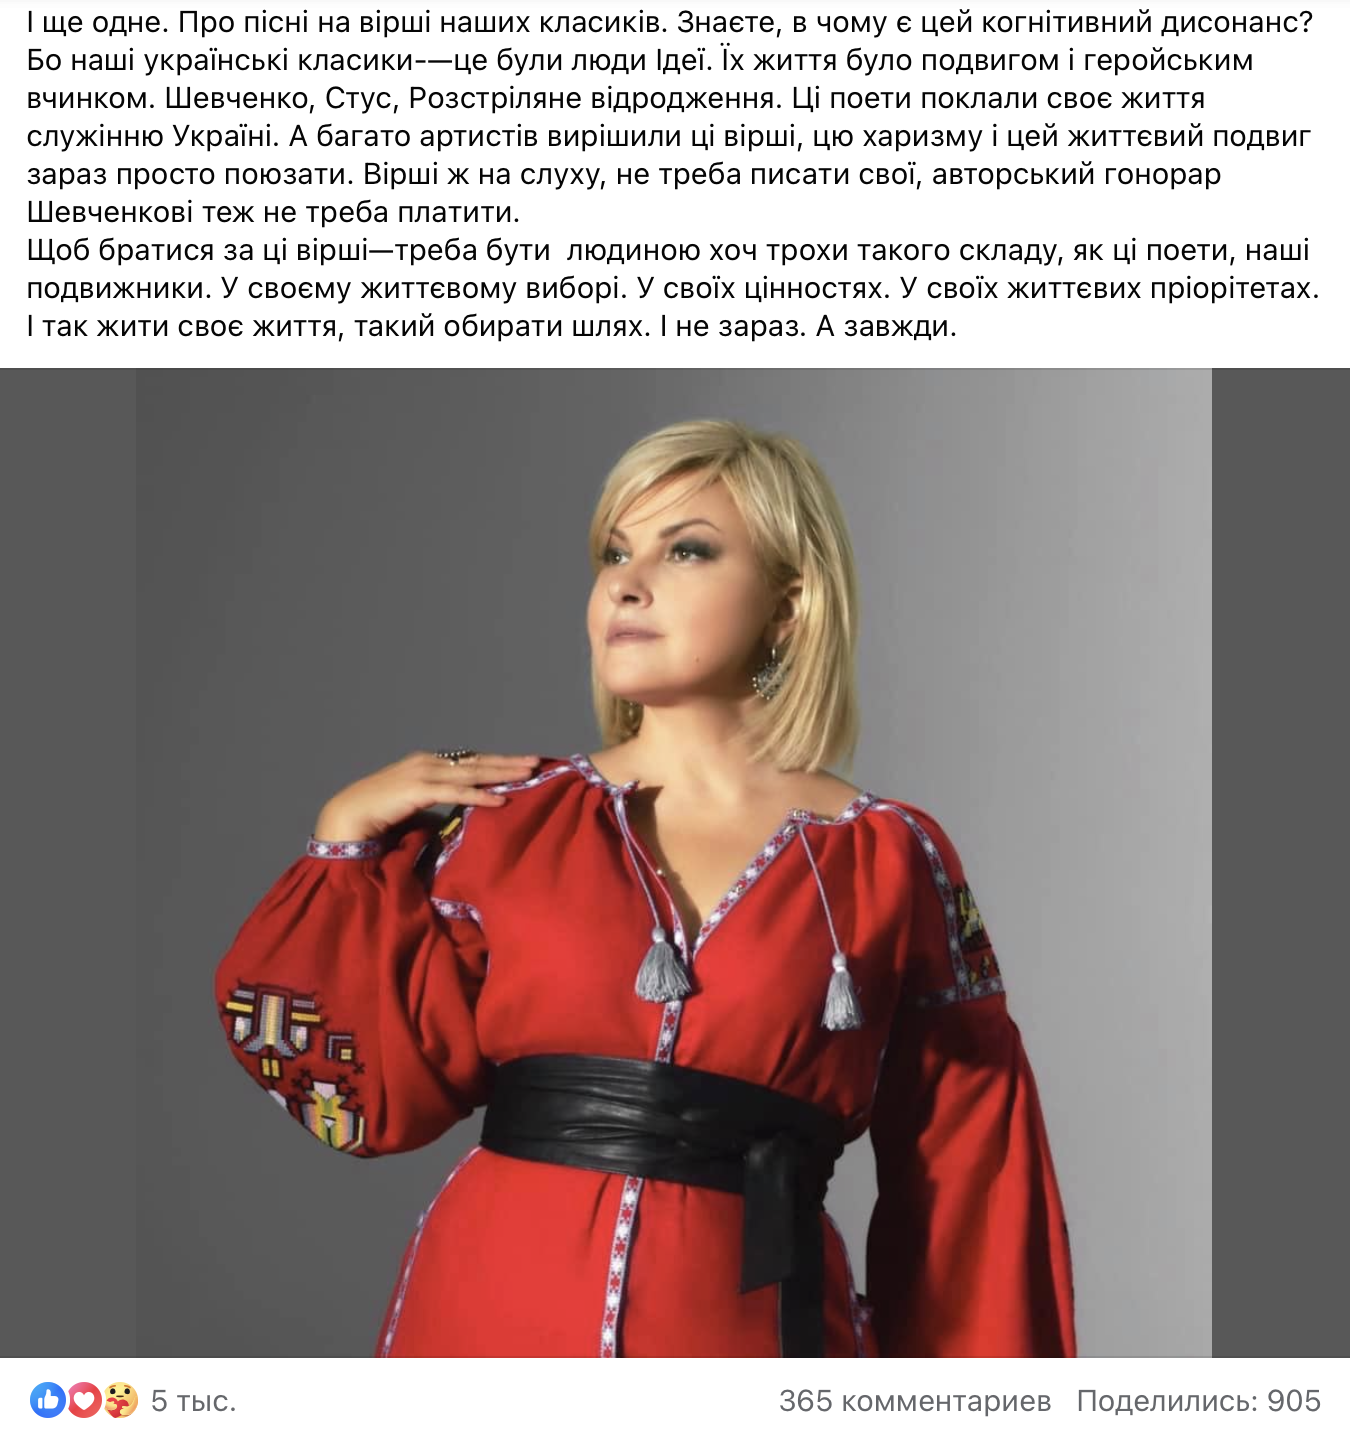 Мария Бурмака назвала циничную причину, почему украинские звезды вдруг запели стихи Шевченко: это когнитивный диссонанс